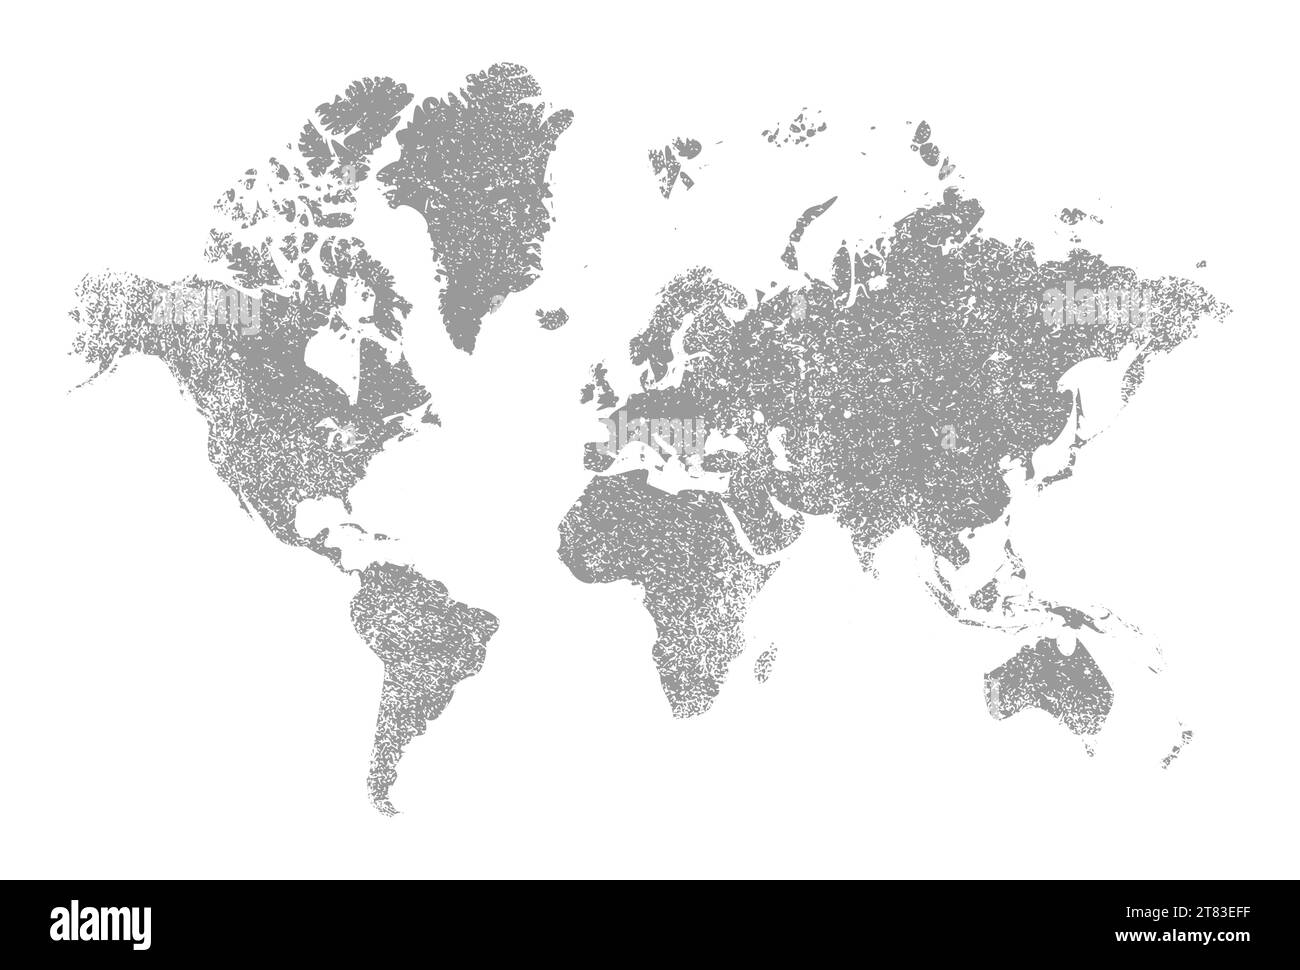 Conception de texture grunge de carte du monde. Illustration vectorielle abstraite de fond de timbre de carte du monde vintage. Illustration de Vecteur